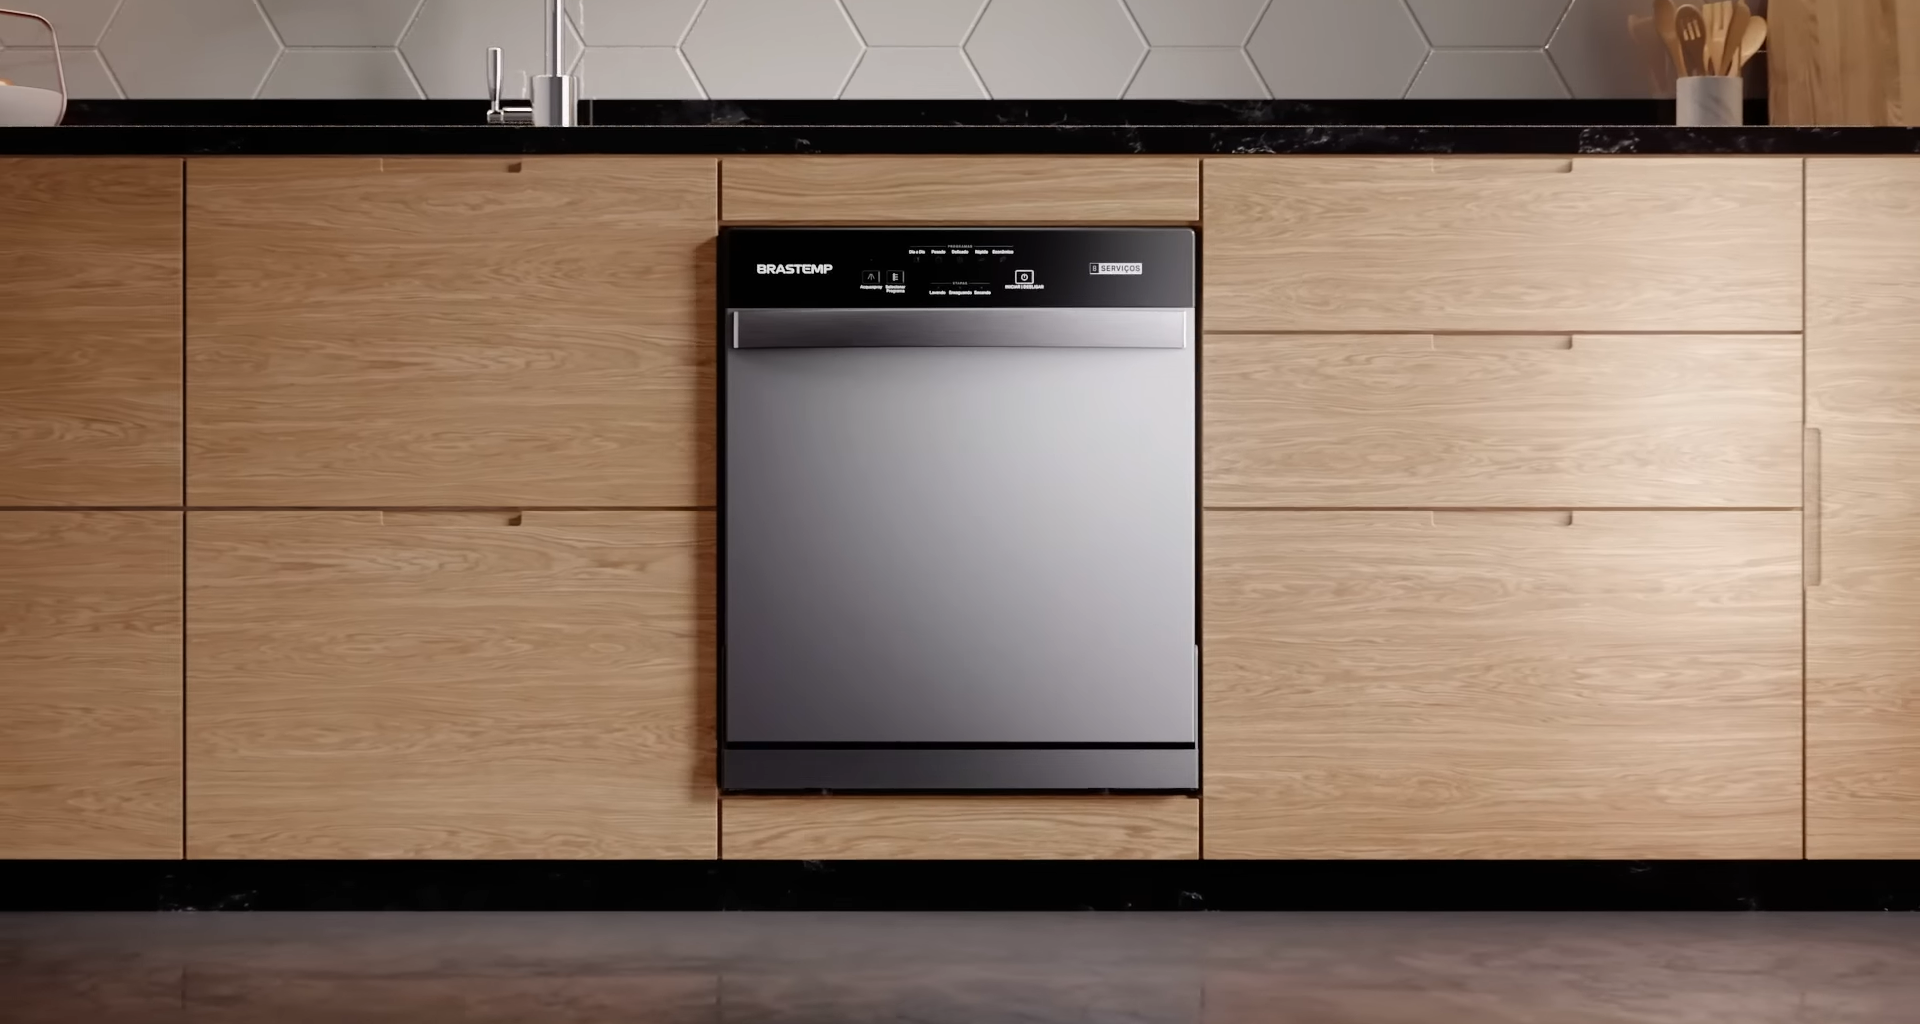 Forno brastemp com função airfryer em destaque em cozinha